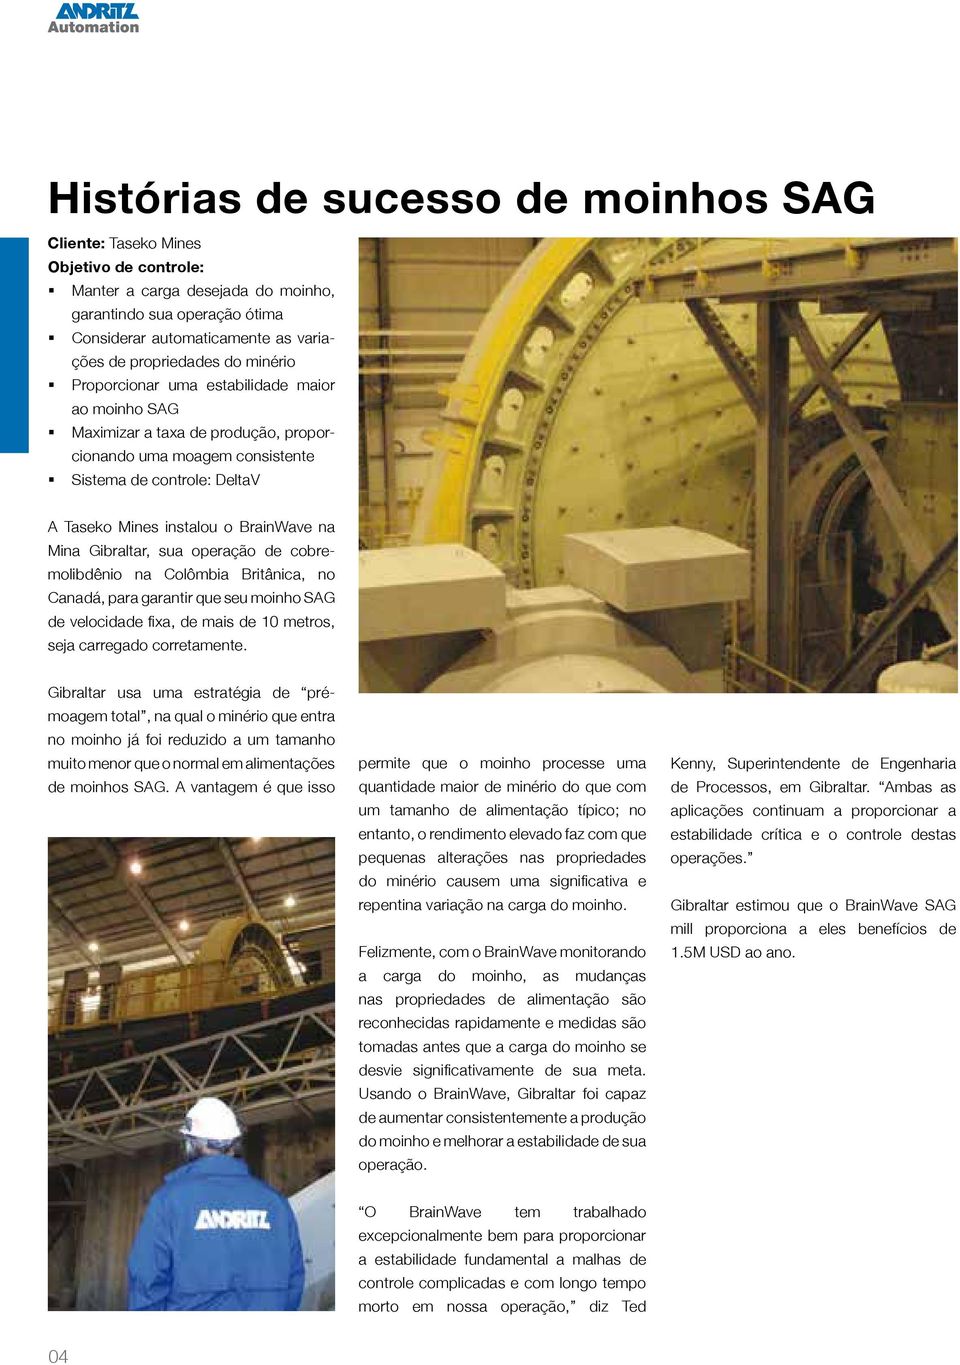 Gibraltar, sua operação de cobremolibdênio na Colômbia Britânica, no Canadá, para garantir que seu moinho SAG de velocidade fixa, de mais de 10 metros, seja carregado corretamente.